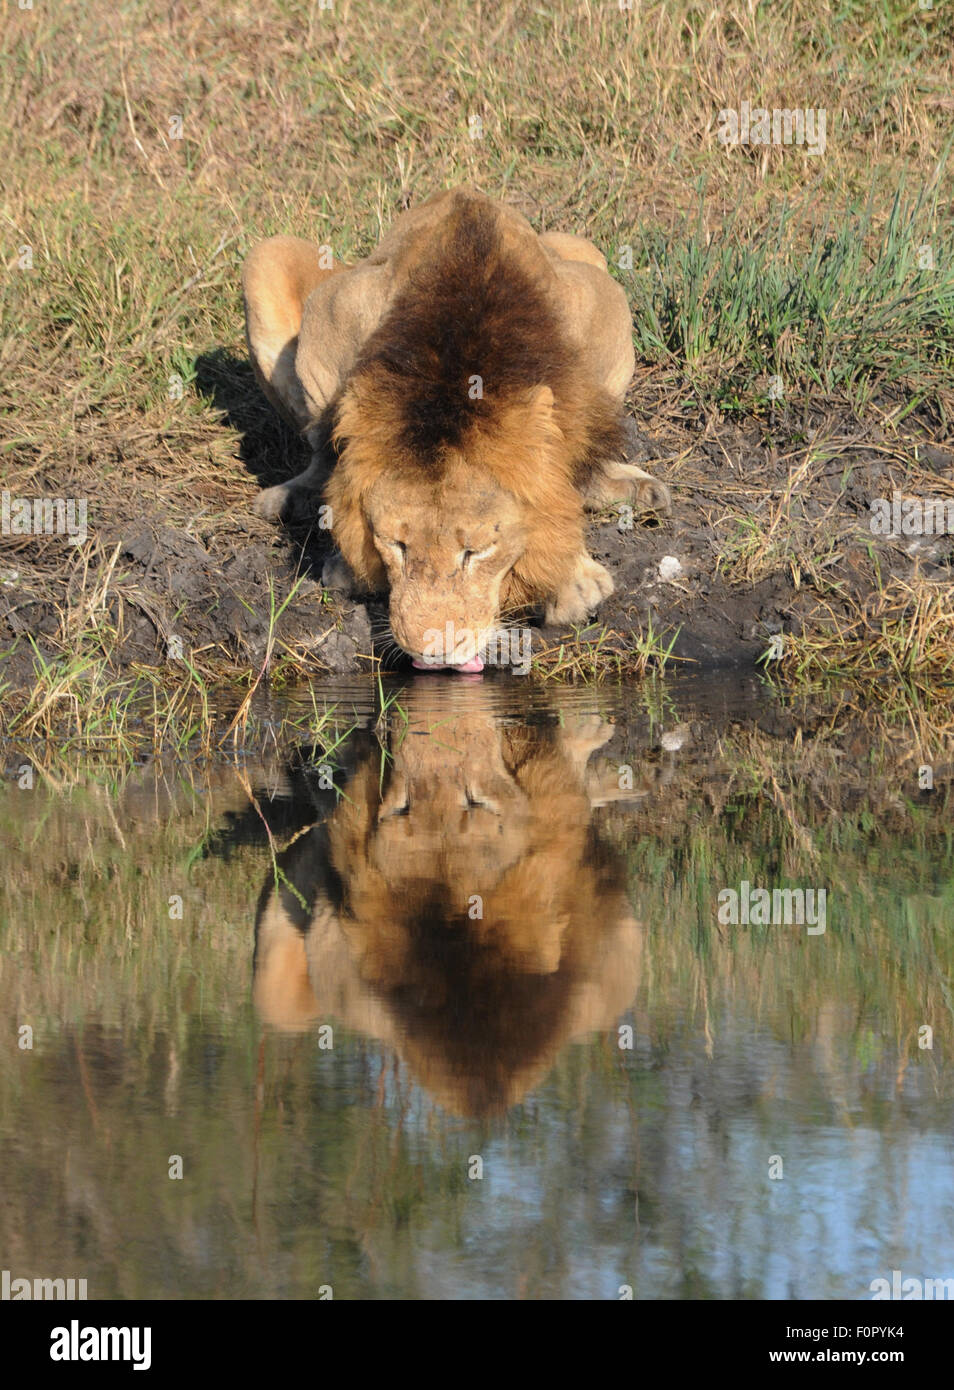 Lion boit de l'eau avec réflexion parfaite Banque D'Images